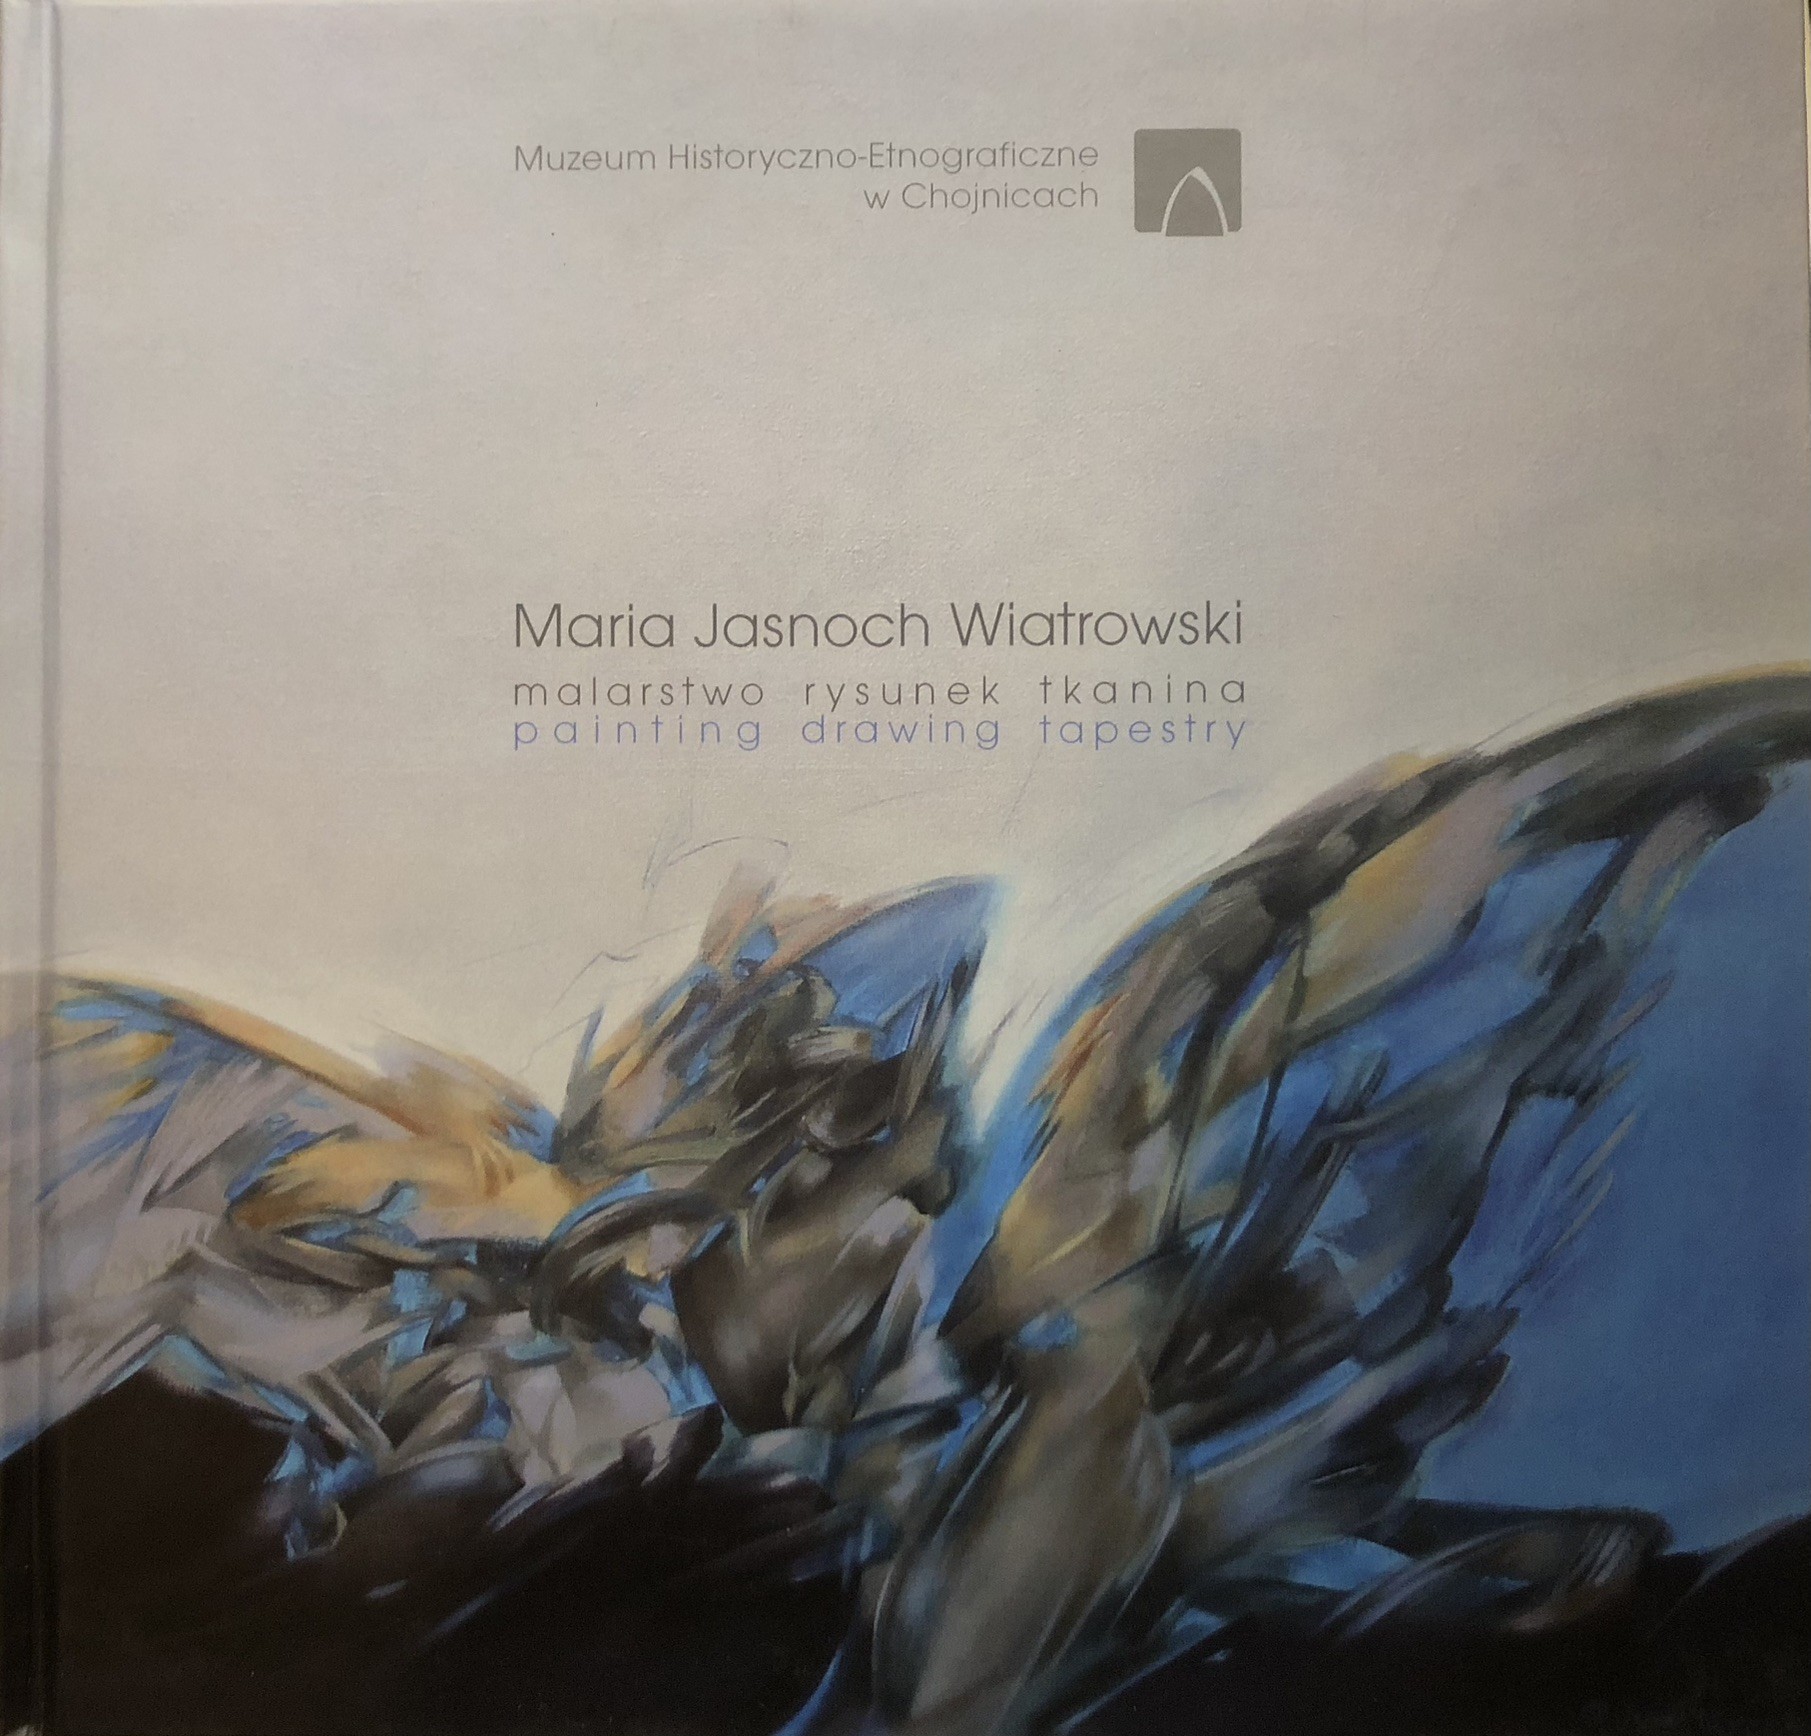 Katalog Maria Jasnoch Wiatrowski – malarstwo, rysunek, tkanina